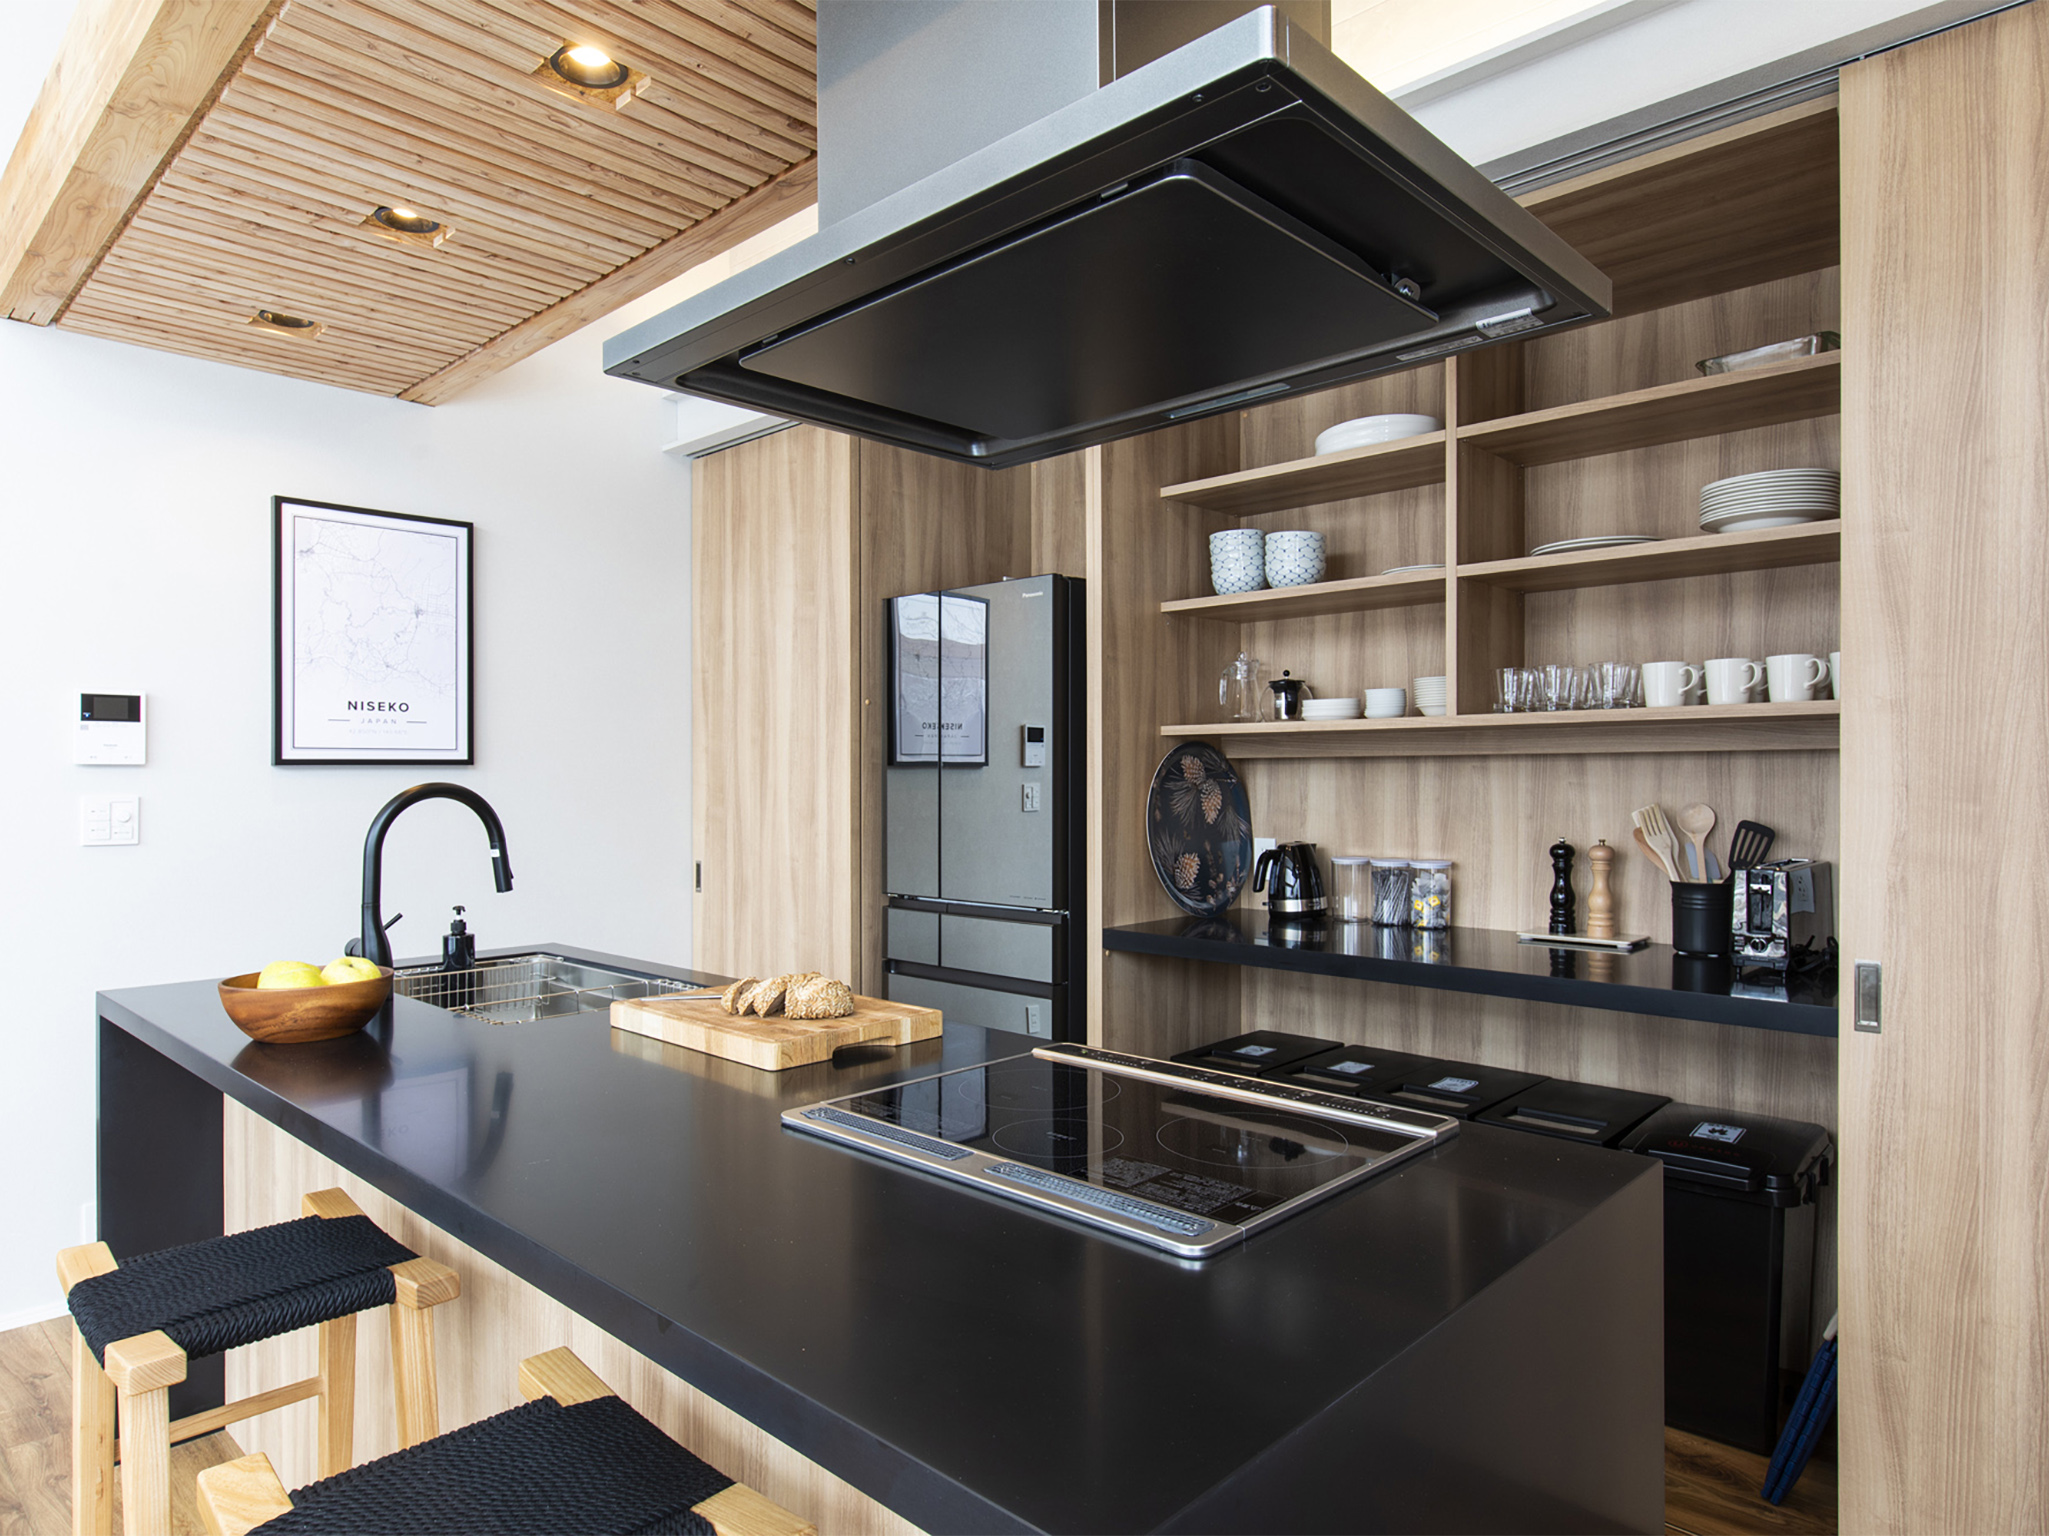 Ukiyo Chalet - Modern kitchen design